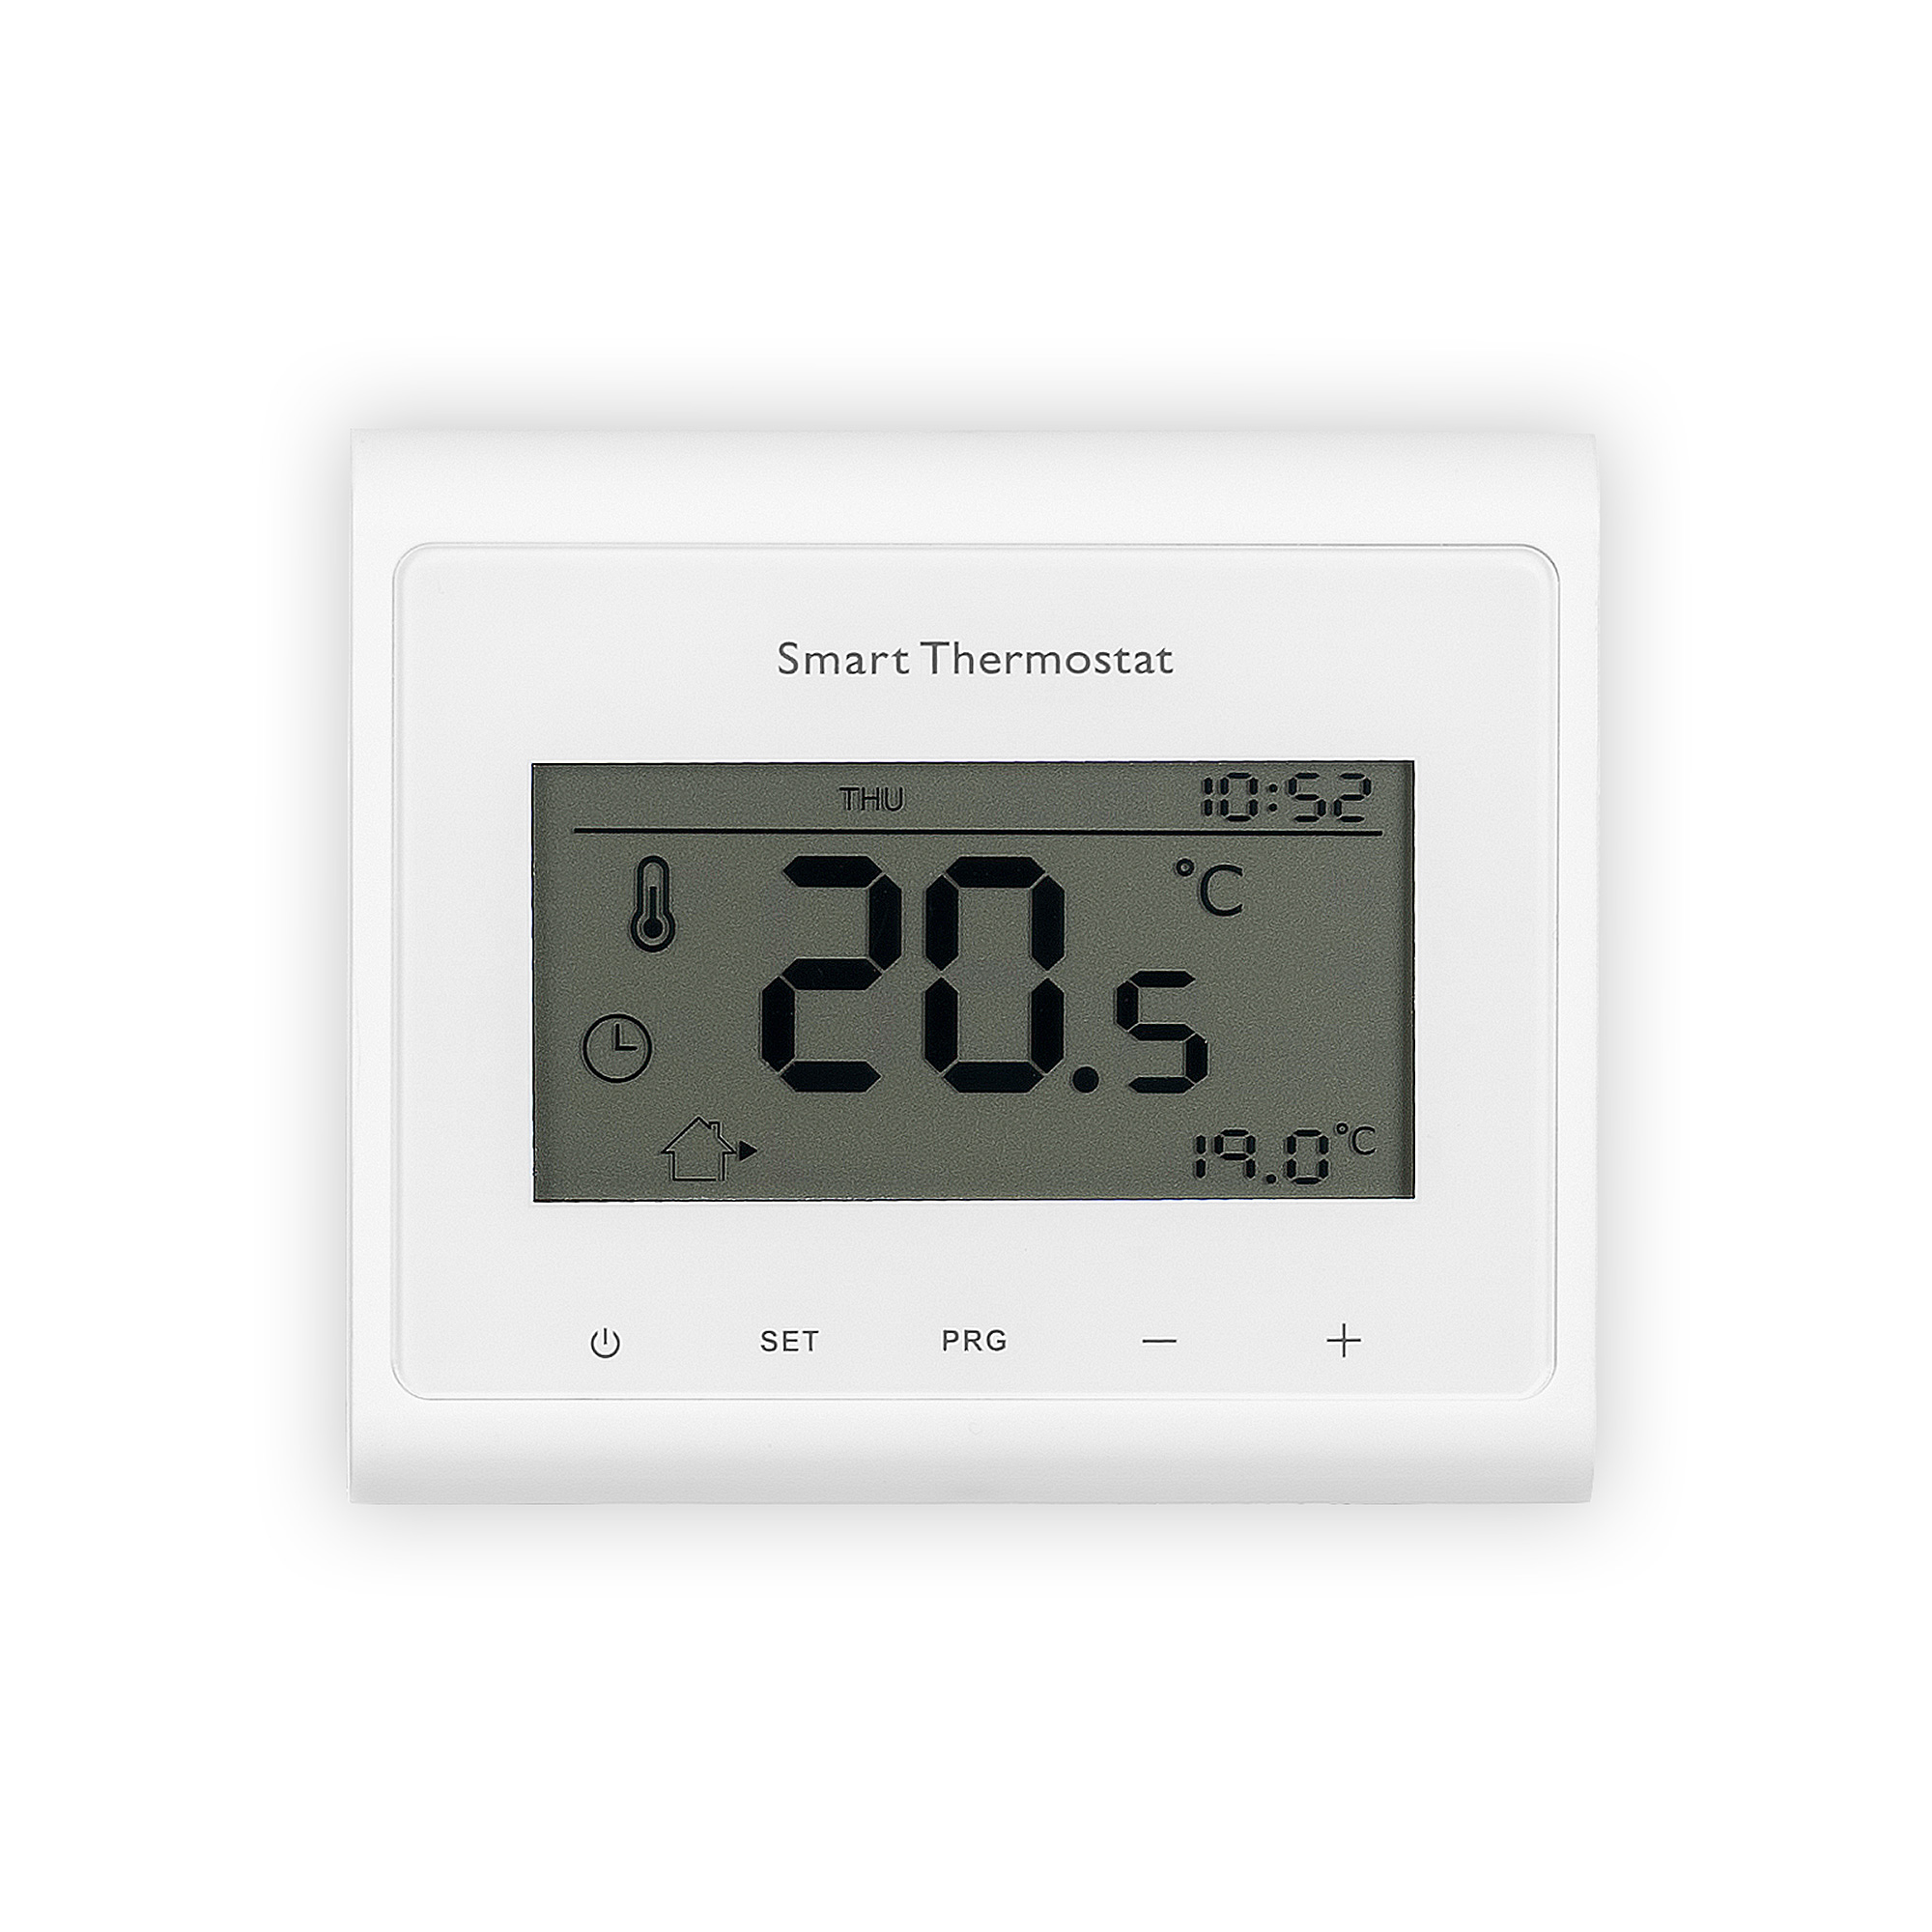 Thermostat - Seite 4 - Das Thermostat funktioniert r